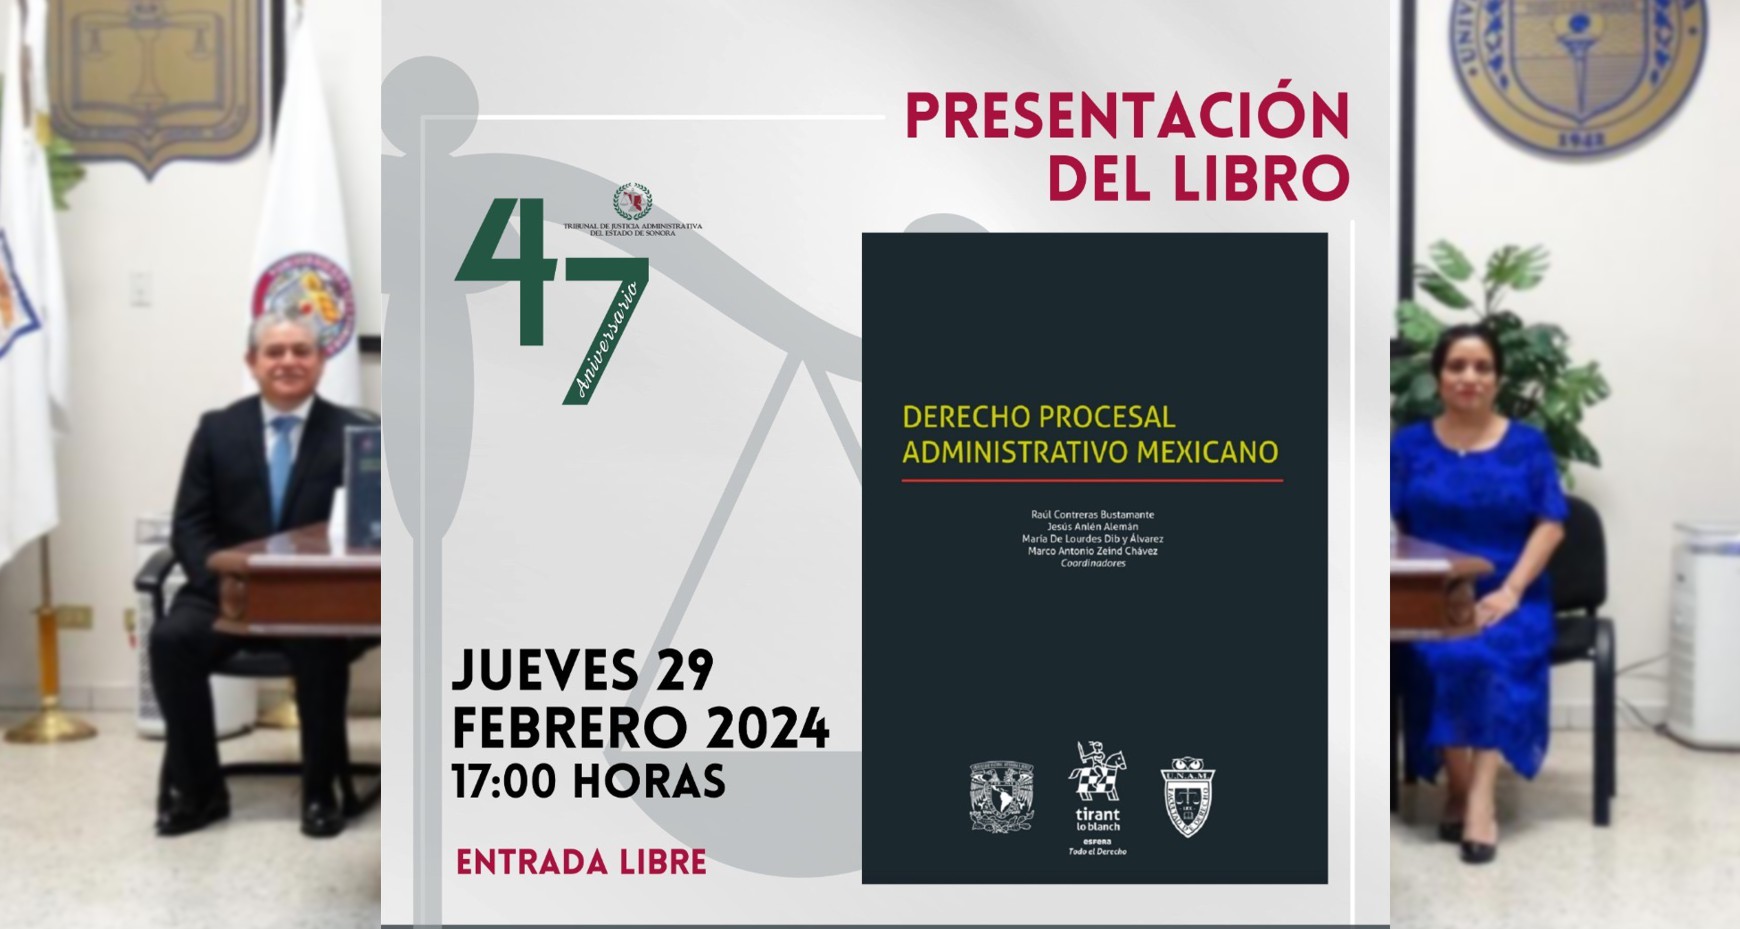 Presentación del Libro Derecho Procesal Administrativo Mexicano